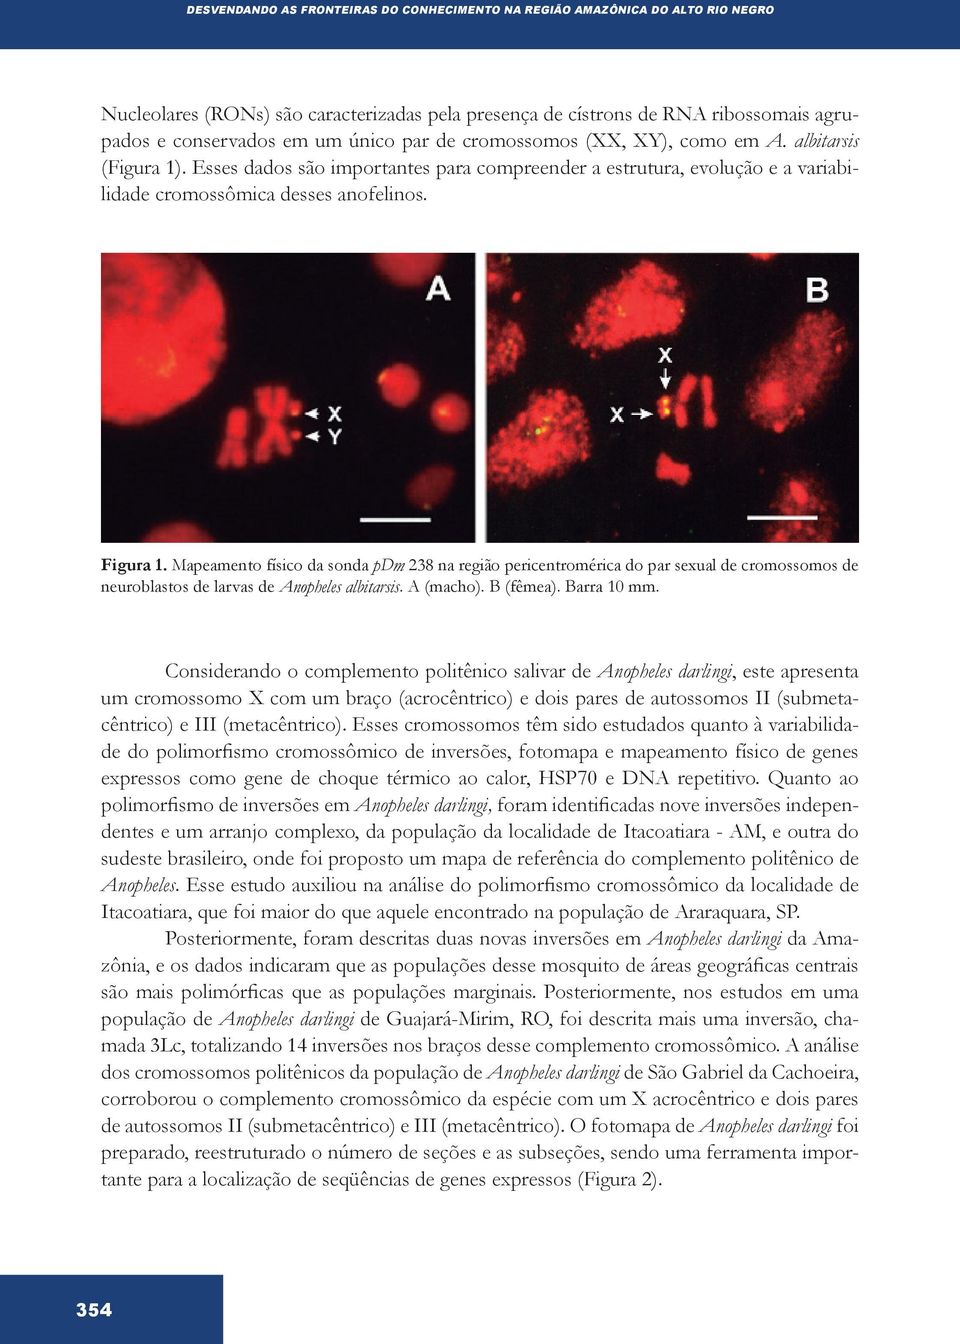 Mapeamento físico da sonda pdm 238 na região pericentromérica do par sexual de cromossomos de neuroblastos de larvas de Anopheles albitarsis. A (macho). B (fêmea). Barra 10 mm.